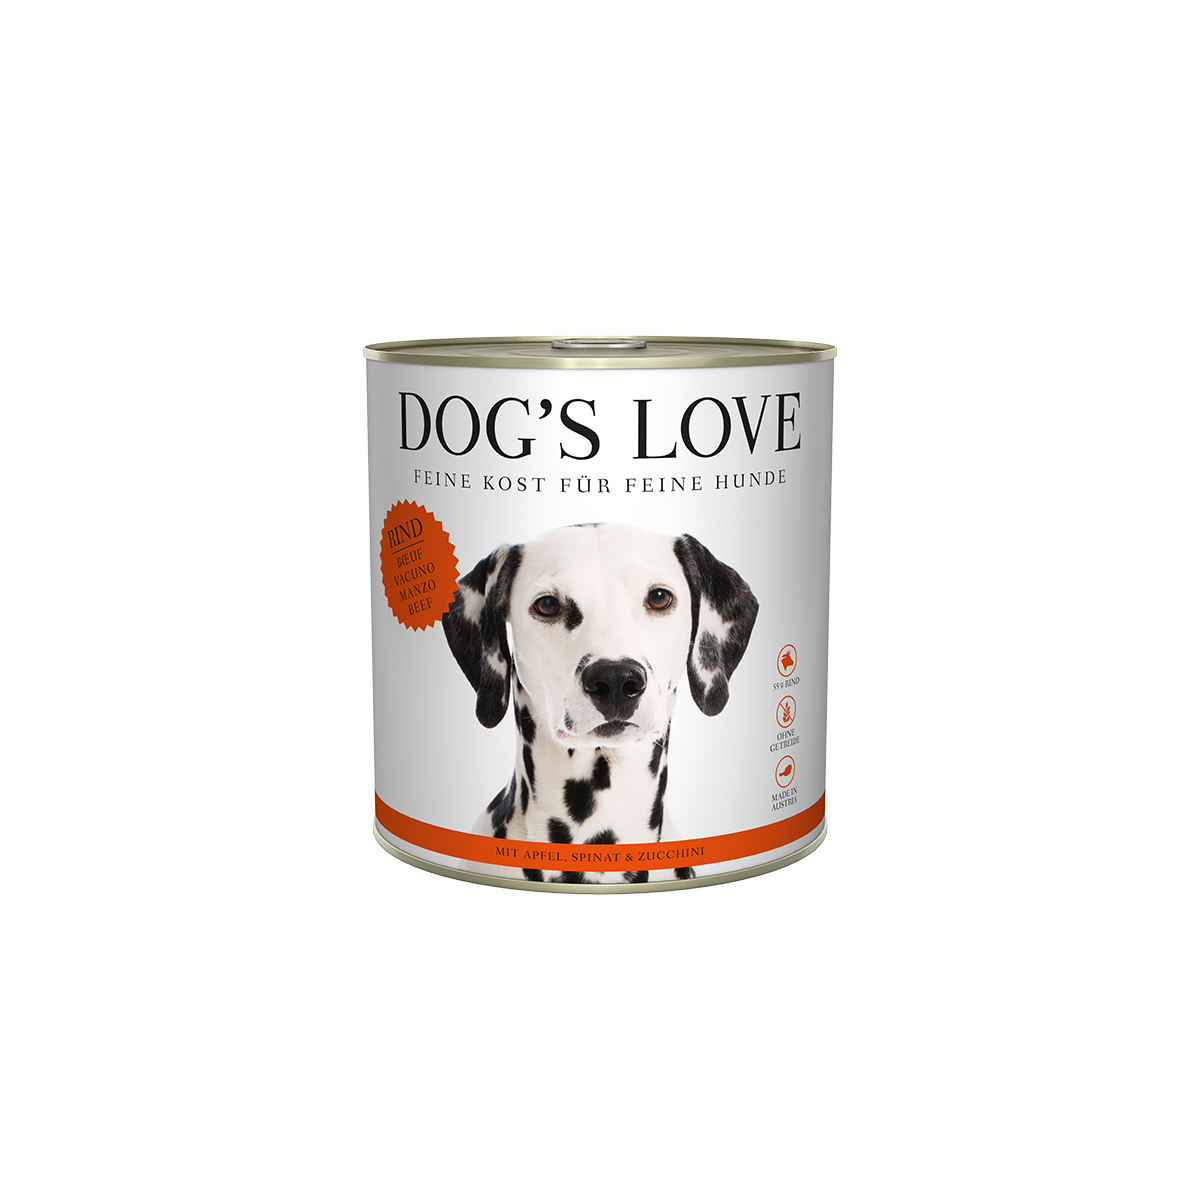 Dog's Love Classic Rind mit Apfel, Spinat und Zucchini 12x800g von Dog's Love